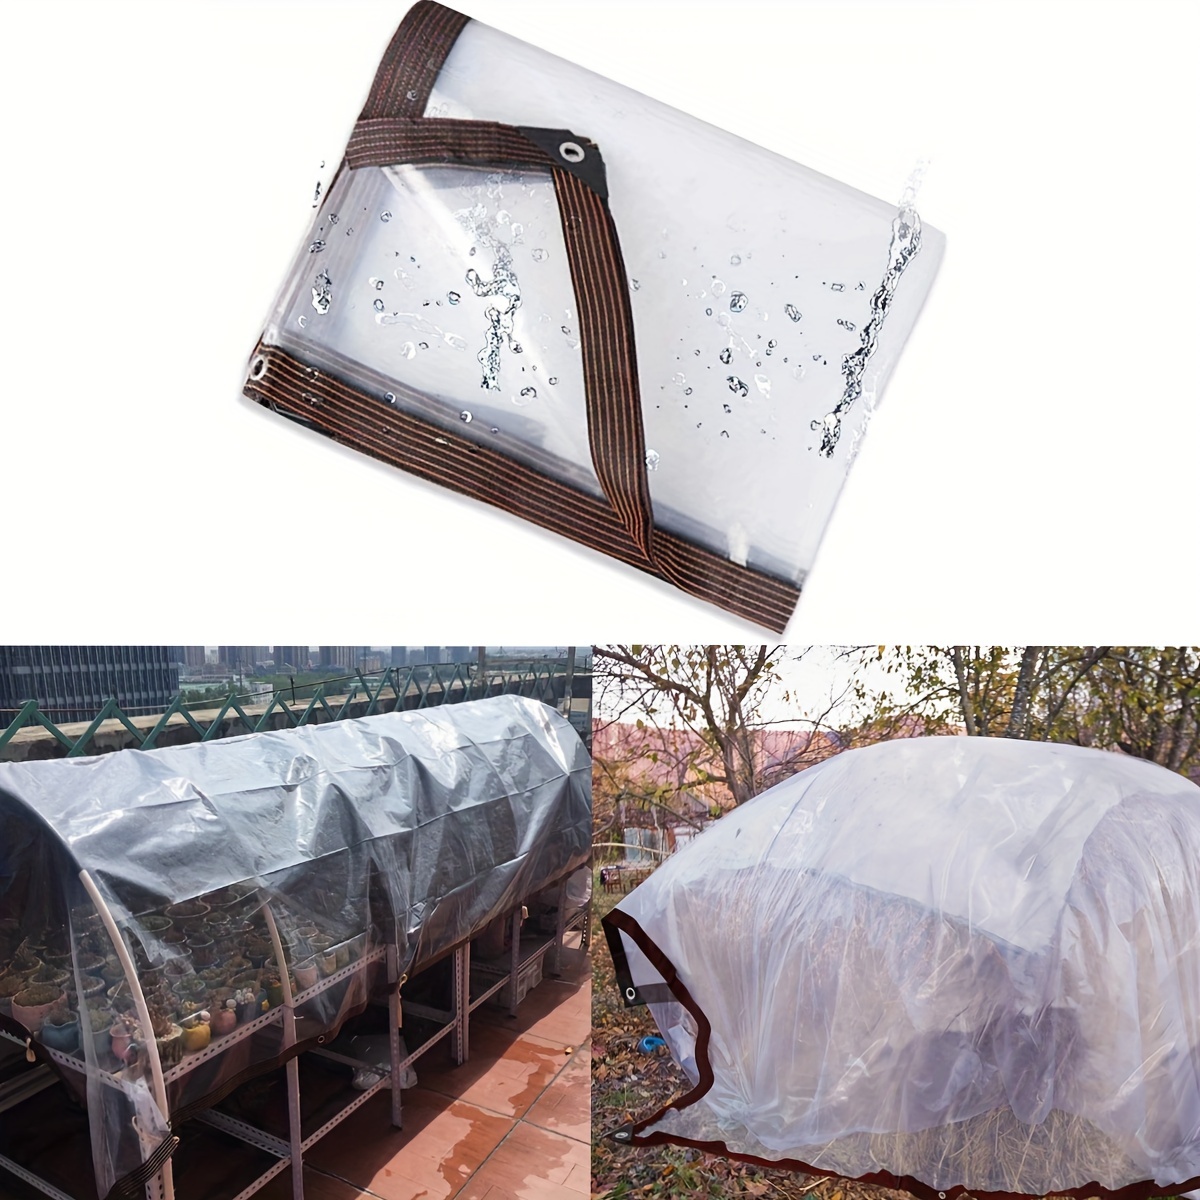 Couverture De Neige De Pluie UV Transparente en Polycarbonate